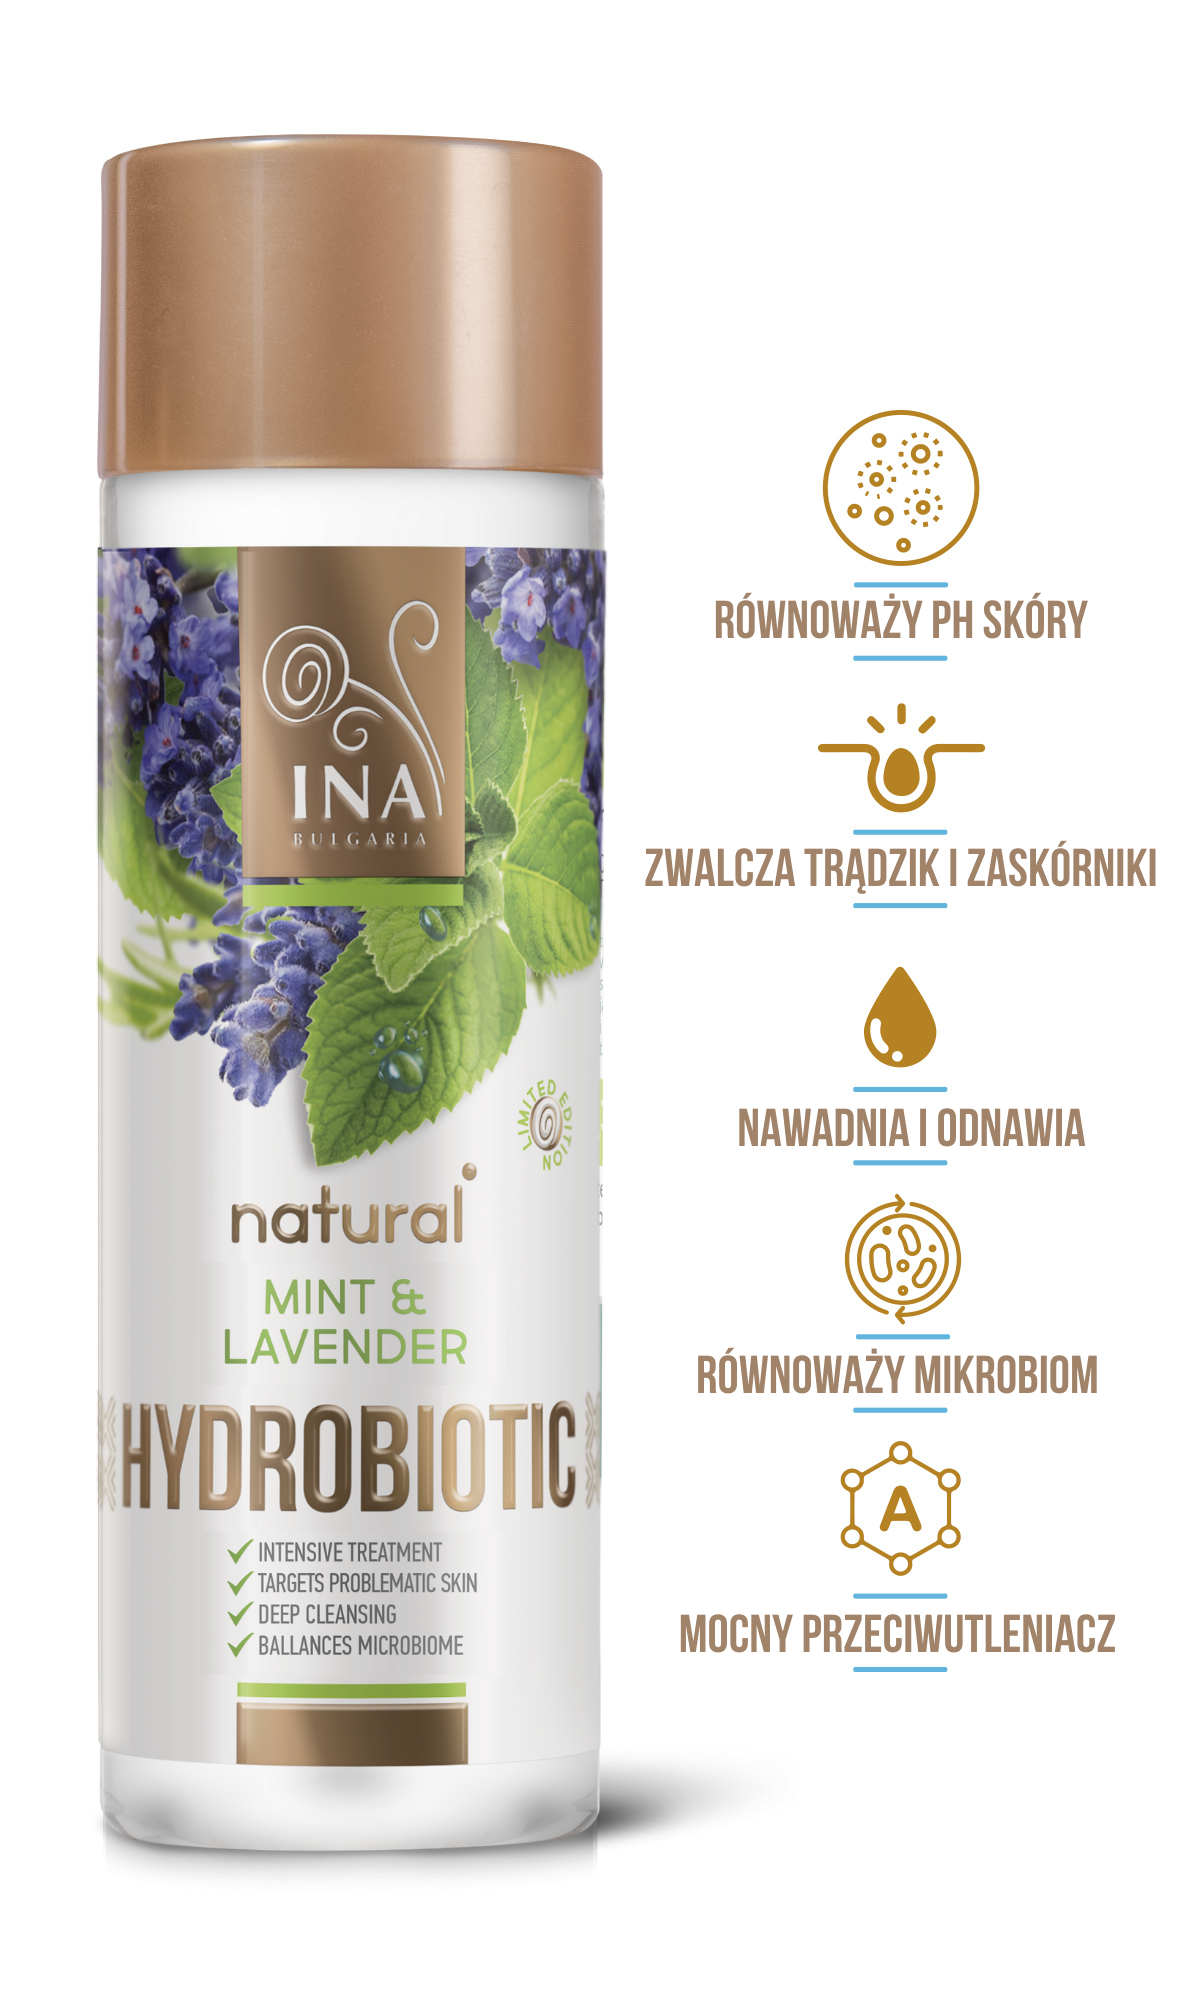 Hydrobiotic - Lawenda & Mięta - intensywna pielęgnacja skóry Trądzikowej